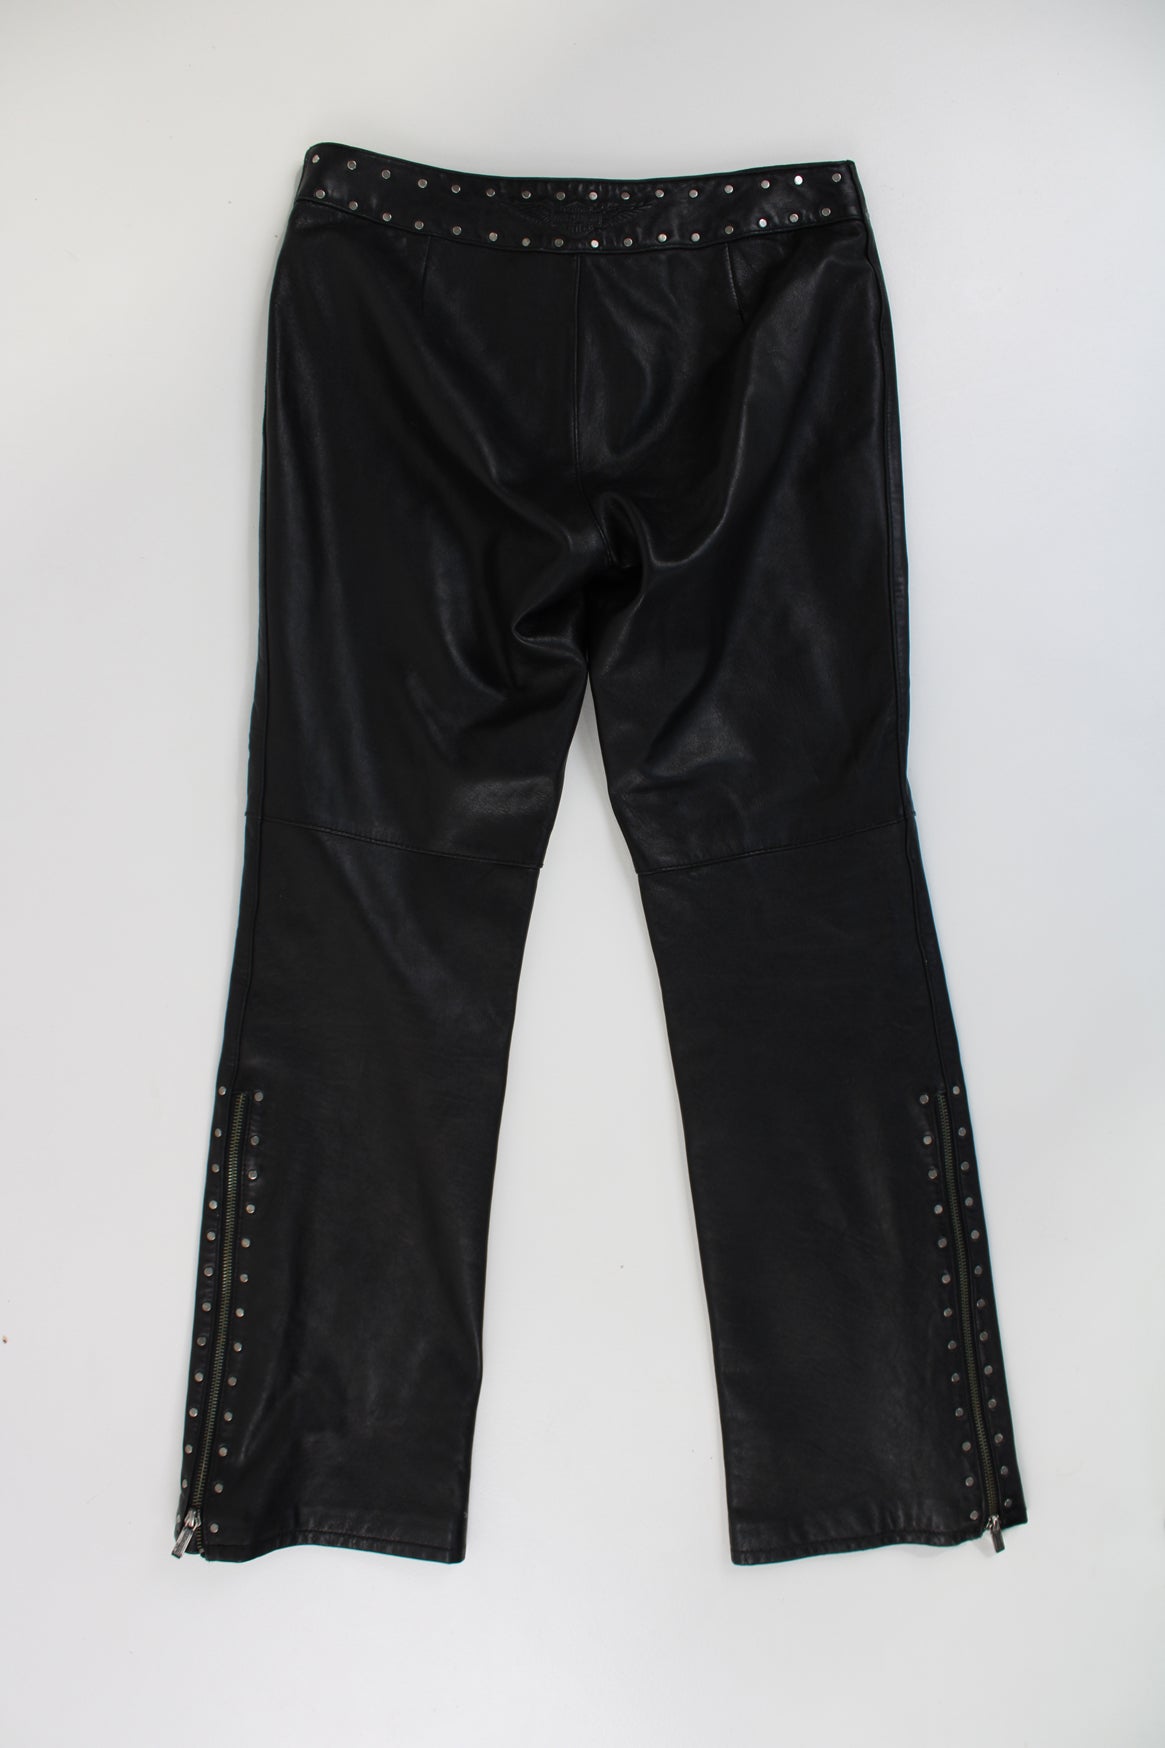 Harley Davidson Leather Trousers (M) – VintageFolk